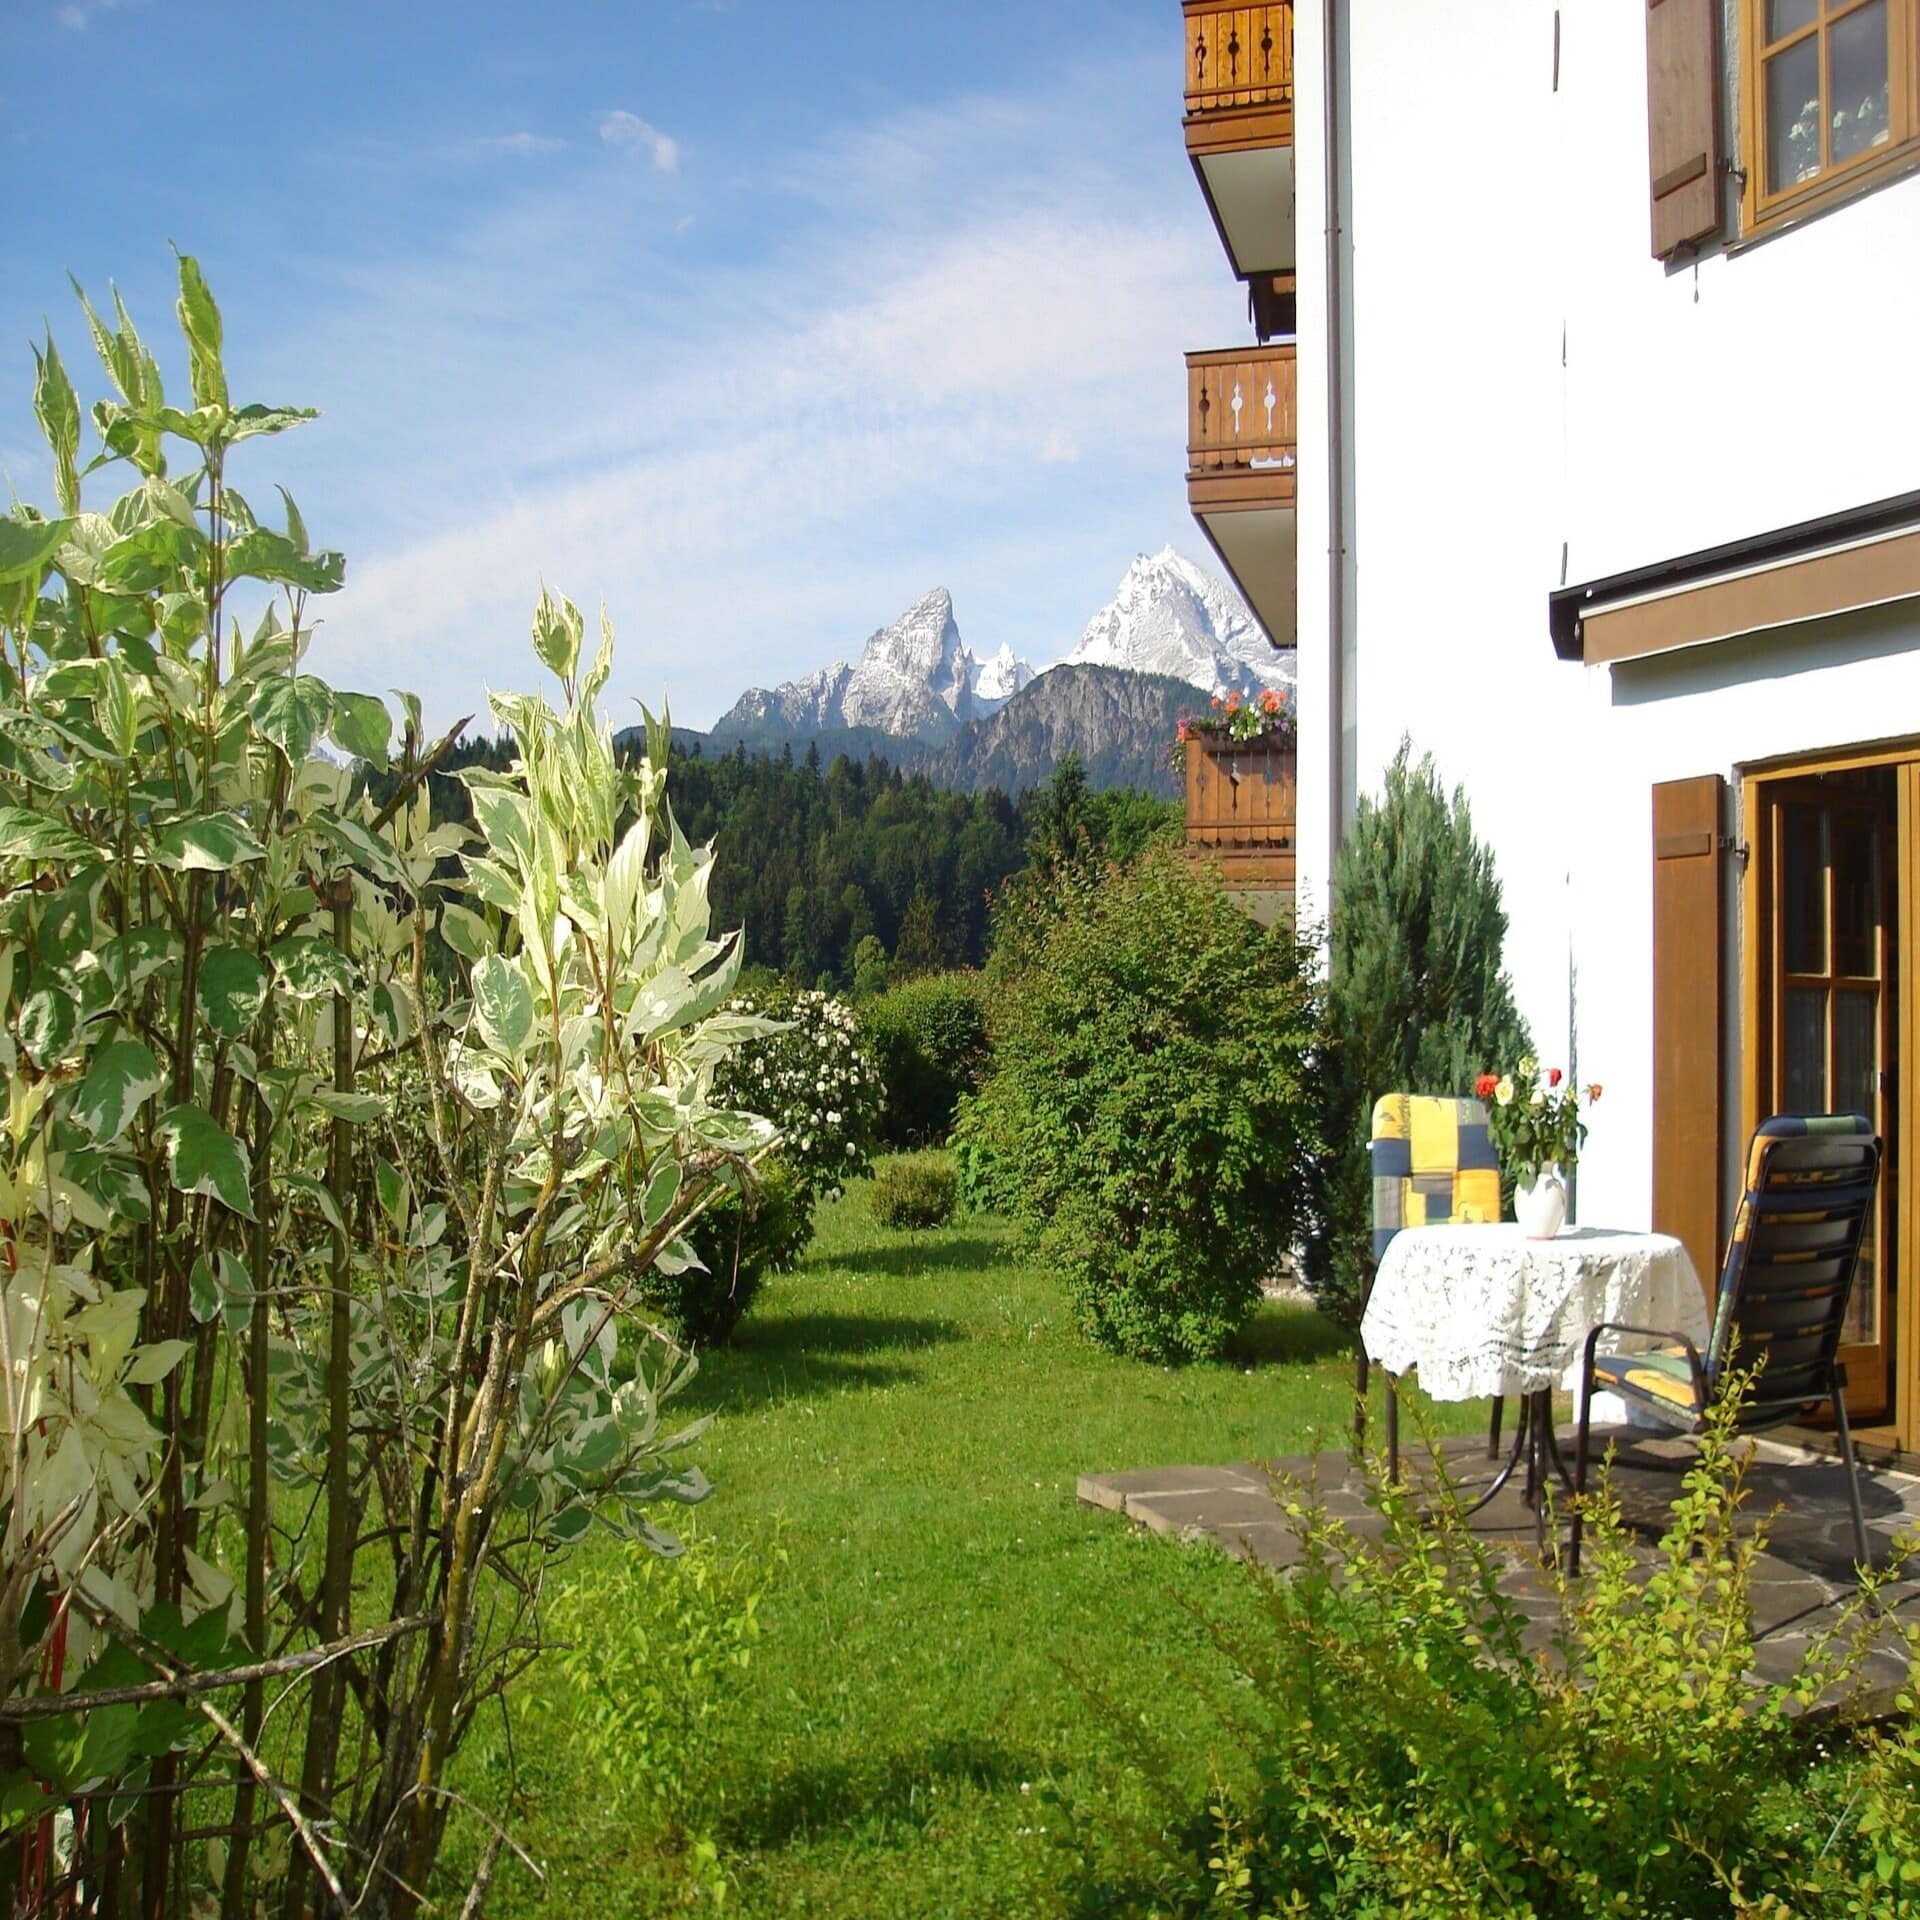 Ecke eines Hauses mit Terrasse und Balkonen. Blick durch den grünen Garten auf die Berge.